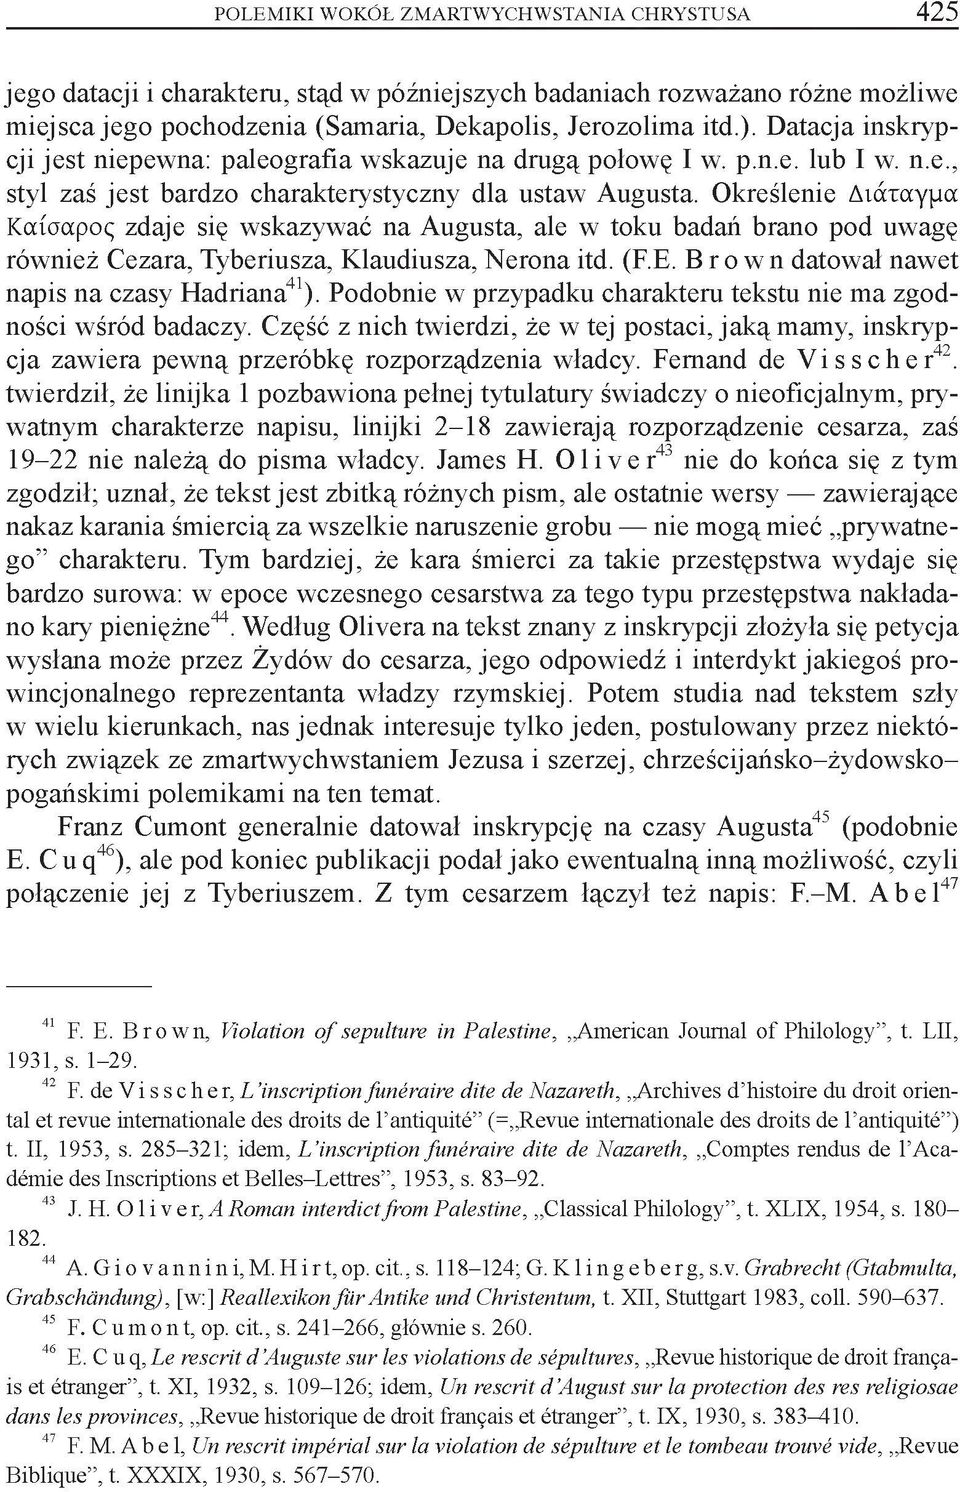 Określenie Διάταγμα Καίσαρος zdaje się wskazywać na Augusta, ale w toku badań brano pod uwagę również Cezara, Tyberiusza, Klaudiusza, Nerona itd. (F.E. Brown datował nawet napis na czasy Hadriana41).